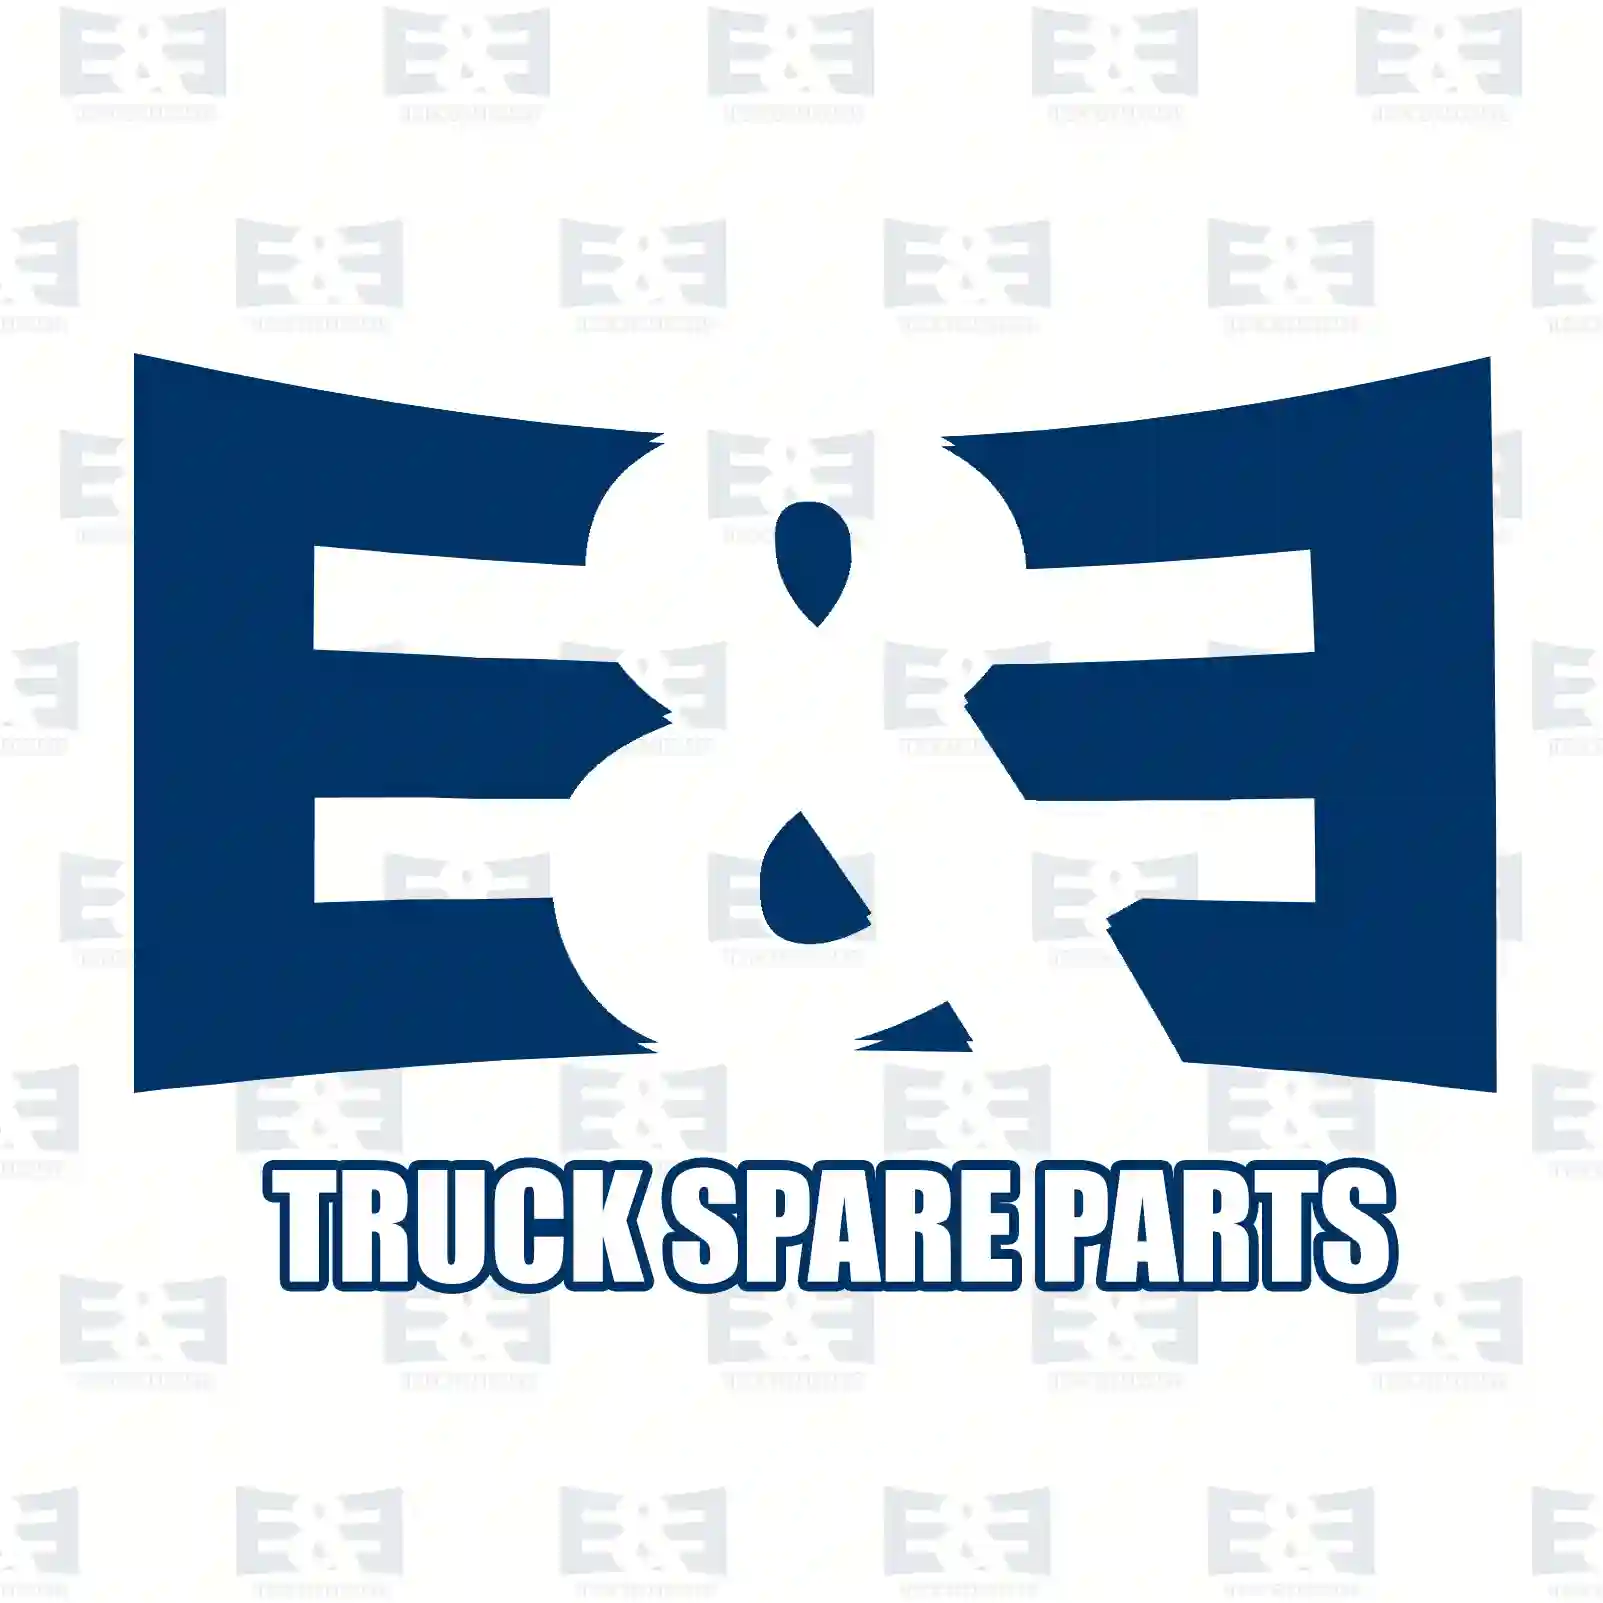 Rear drive switch, 2E2290046, 1227274, 1406051, 1444282, 1805255, 3S7T-15520-AA, 3S7T-15520-AB, 6M2T-15520-BA, CM5T-15520-BA, C2S45412, 30651786, 30774466, 30774573, 30787817, 31367478, 36000254 ||  2E2290046 E&E Truck Spare Parts | Truck Spare Parts, Auotomotive Spare Parts Rear drive switch, 2E2290046, 1227274, 1406051, 1444282, 1805255, 3S7T-15520-AA, 3S7T-15520-AB, 6M2T-15520-BA, CM5T-15520-BA, C2S45412, 30651786, 30774466, 30774573, 30787817, 31367478, 36000254 ||  2E2290046 E&E Truck Spare Parts | Truck Spare Parts, Auotomotive Spare Parts